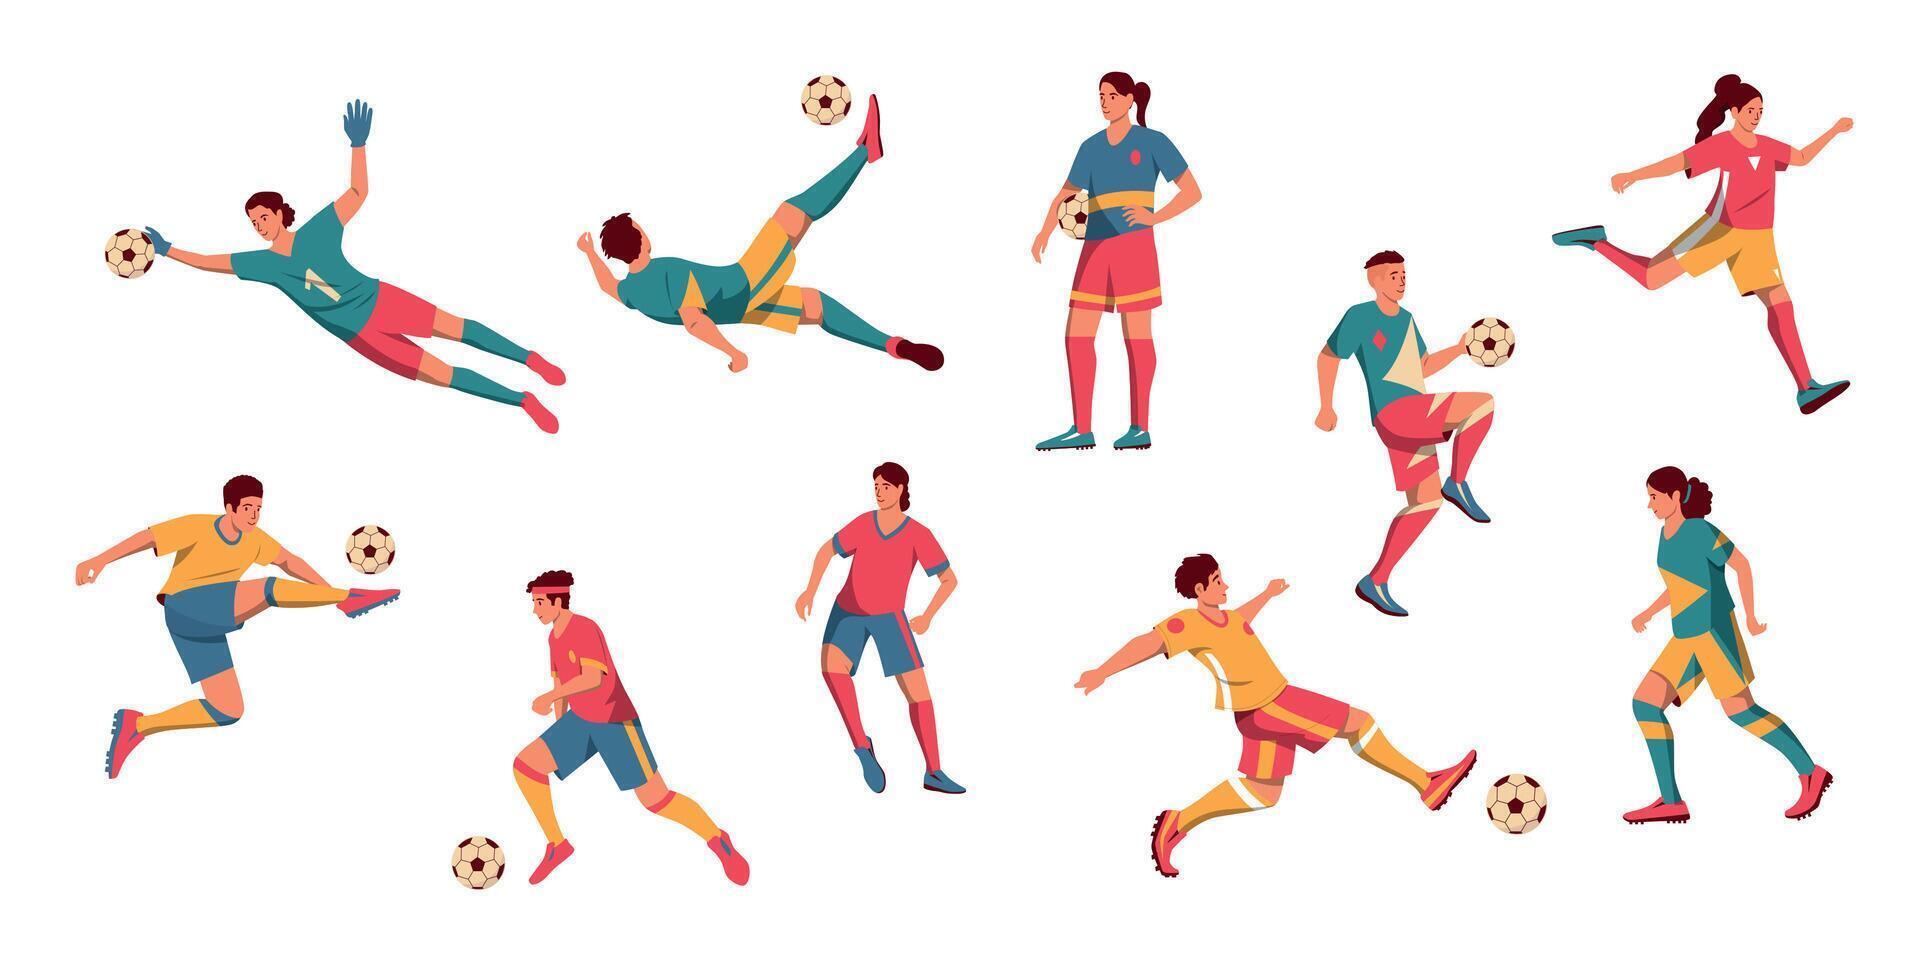 uomini e donne calcio Giocatori. cartone animato maschio e femmina personaggi giocando calcio, maschio e femmina atleti nel uniforme dribbling e calciando sfera. vettore impostato